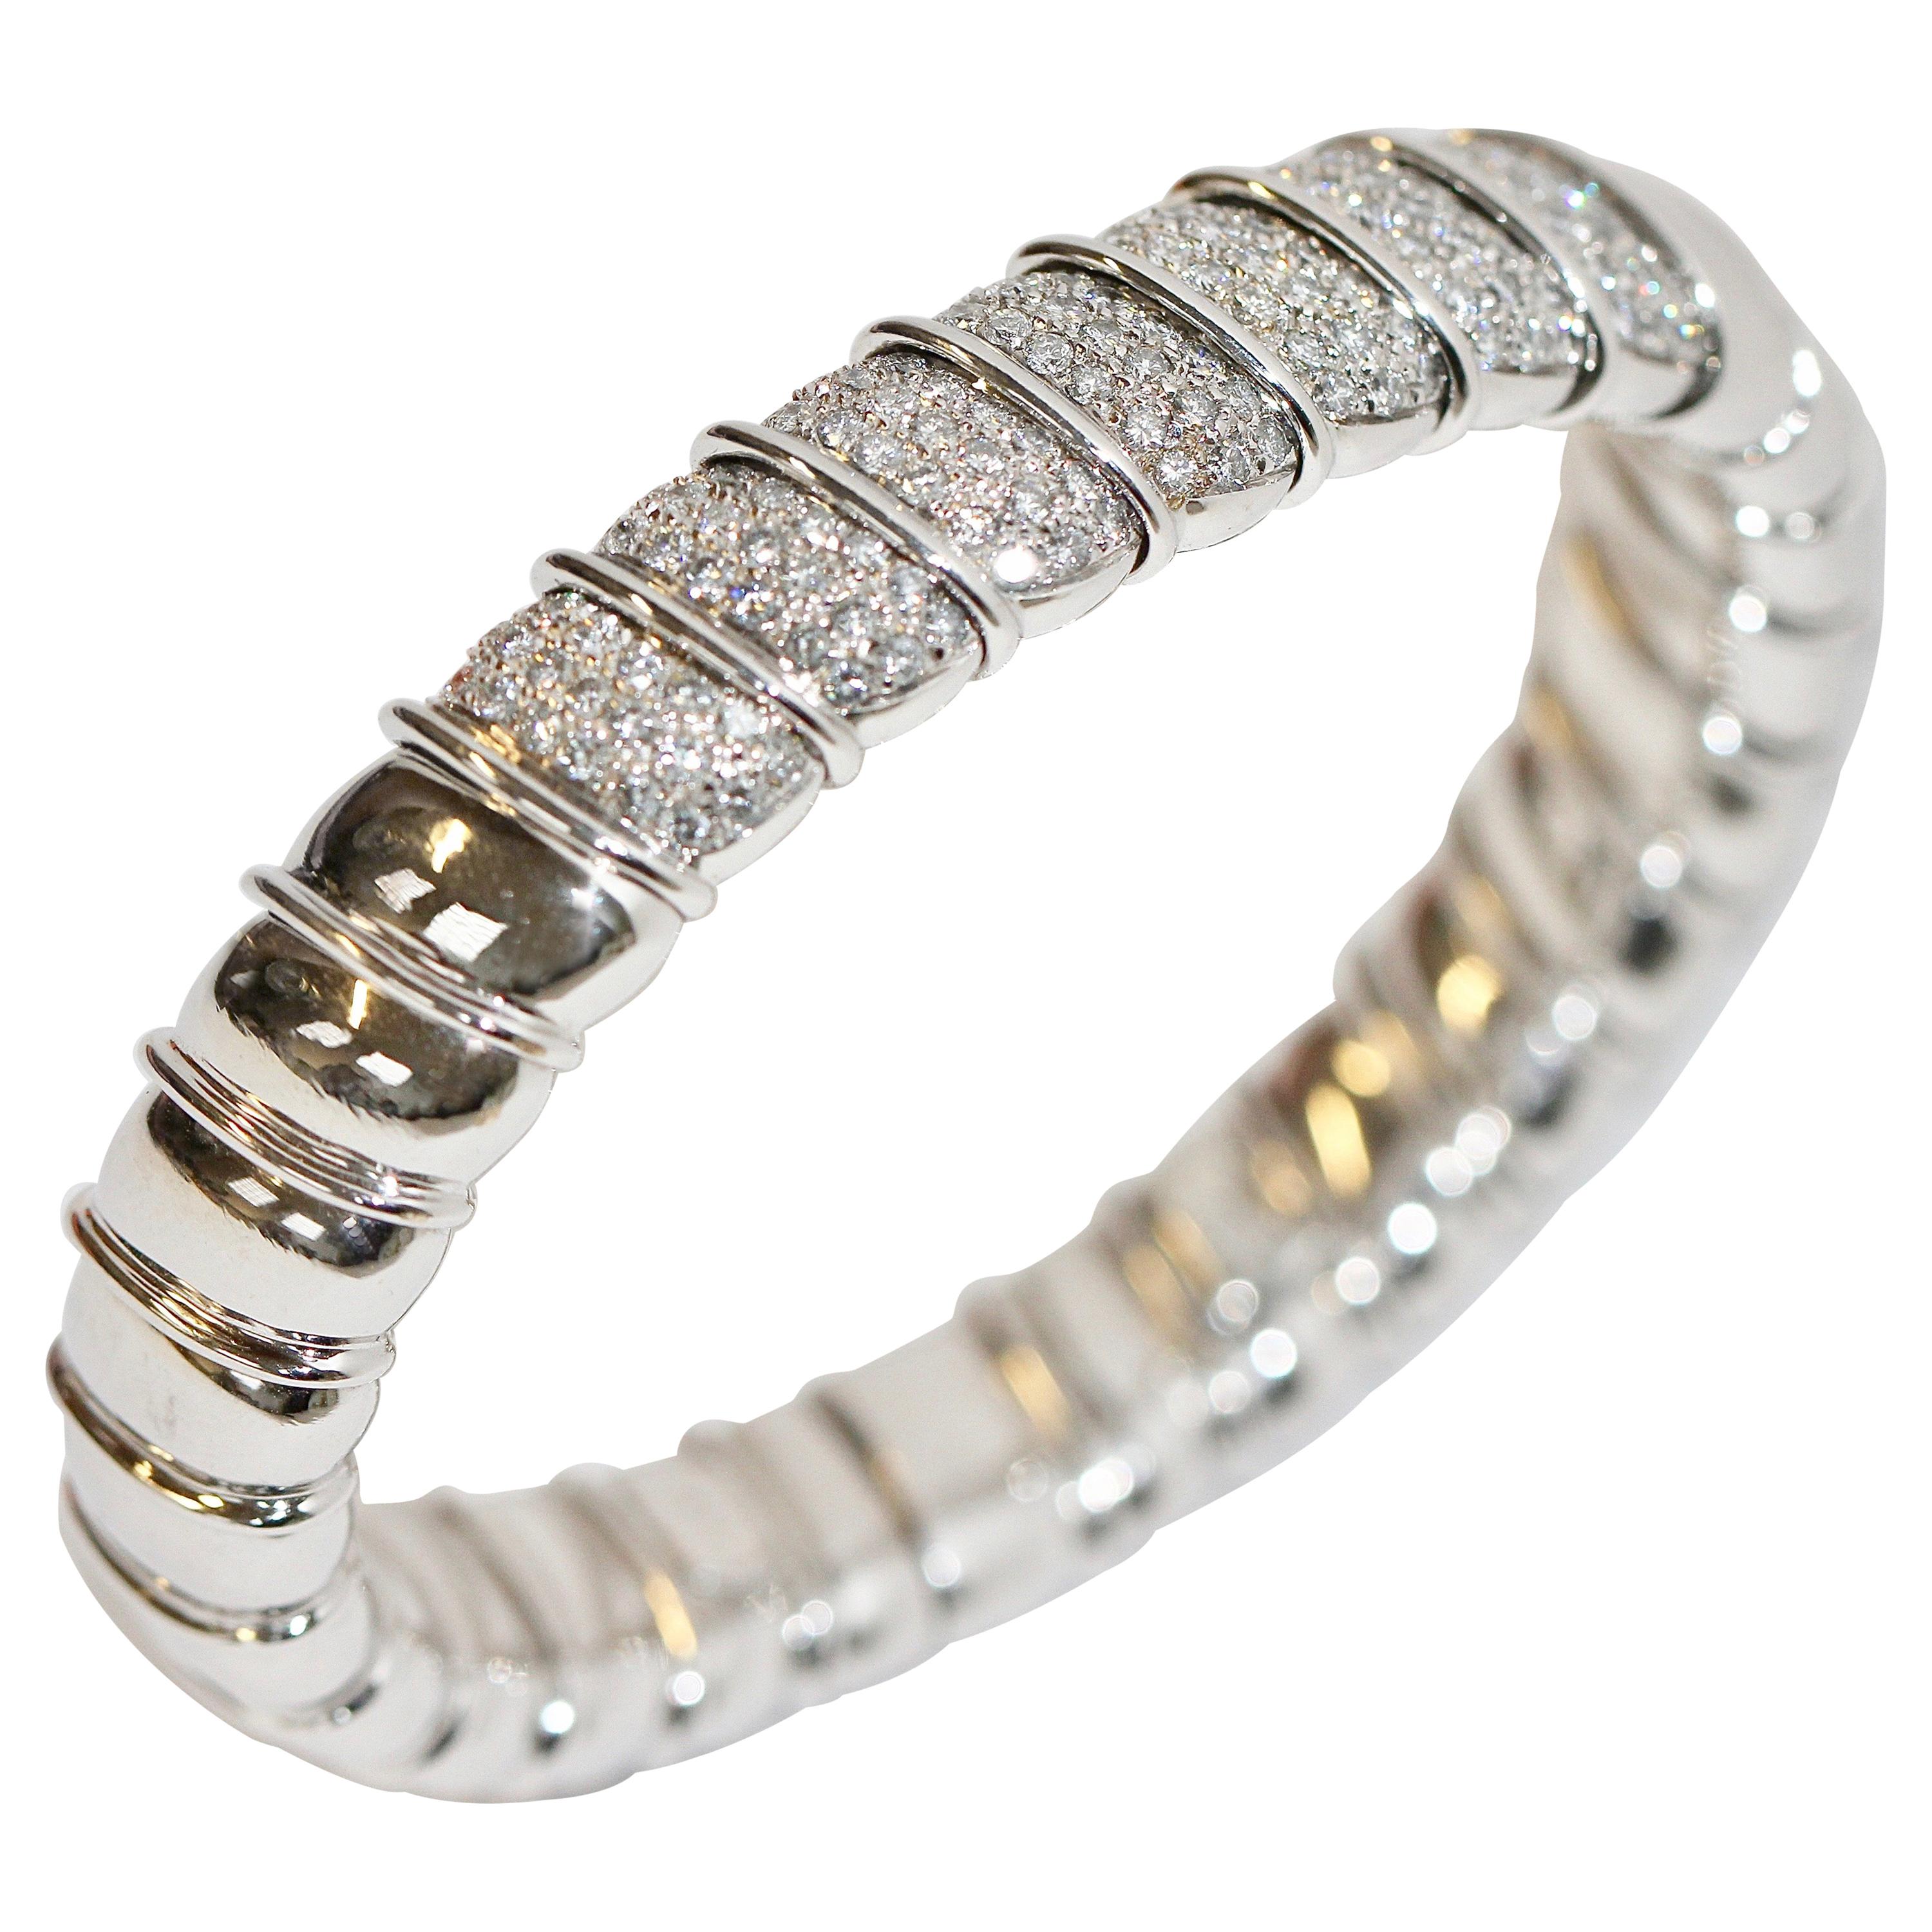 Solid 18 Karat White Gold Luxury Bangle, Bracelet Set with Diamonds